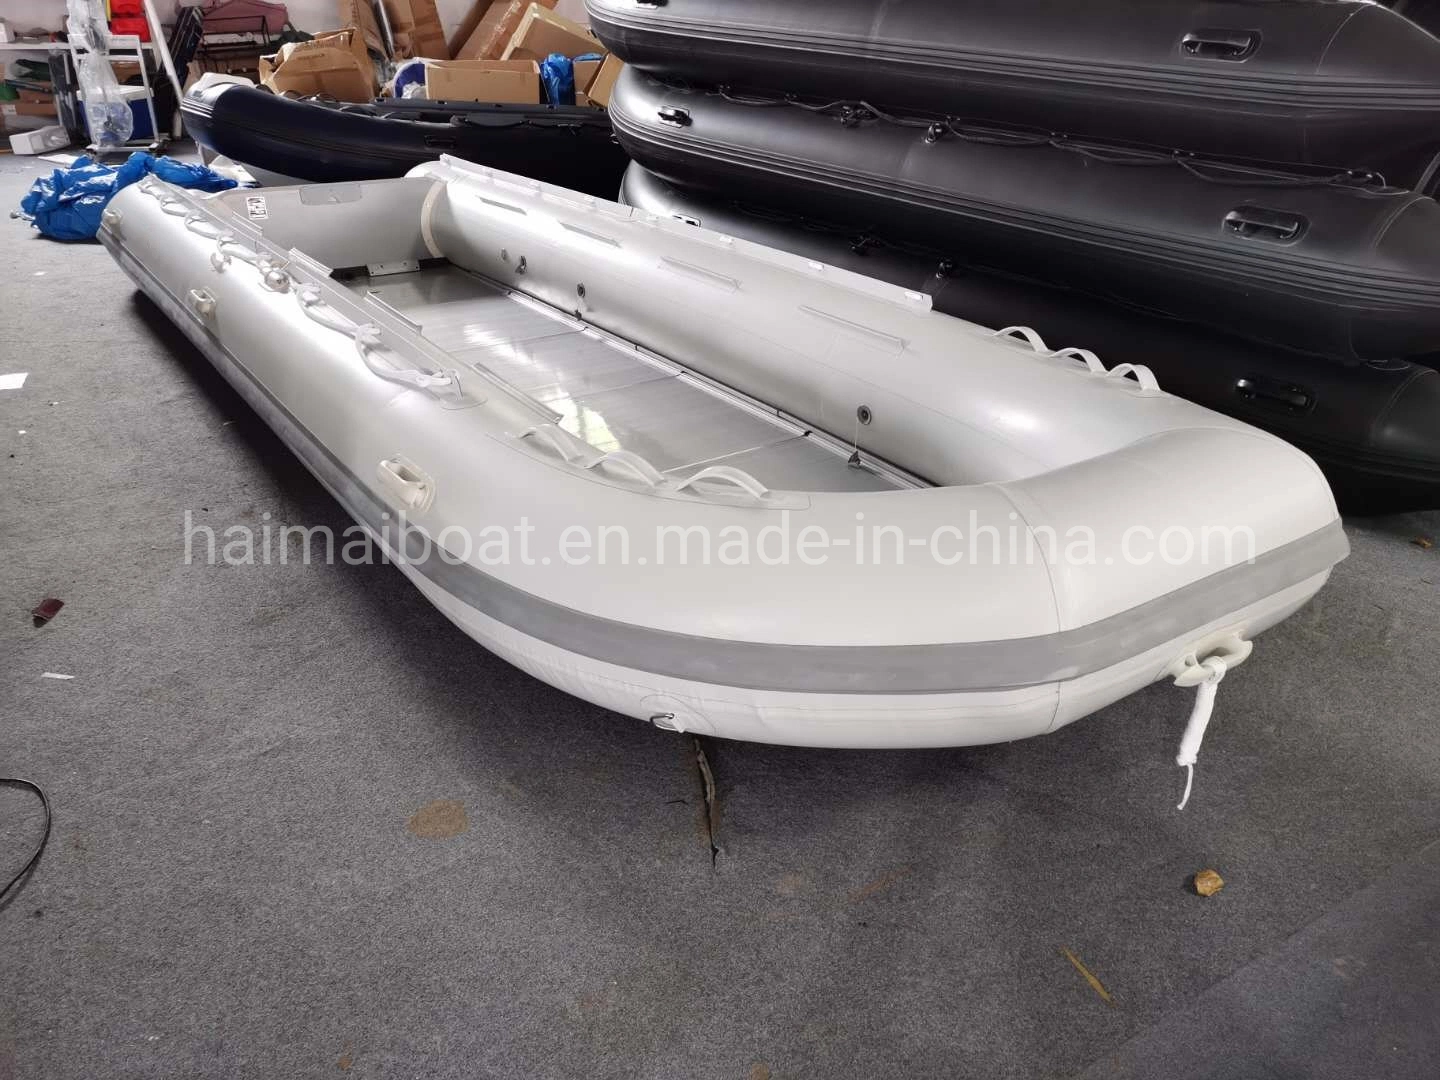 Fabricant de bateaux de la Chine 19,6 ft 6M Produit de sports nautiques Hypalon Inflatable la ligne de Bateau Bateau de pêche Bateau de sauvetage maritime offre bateau Panga Bateau Bateau de patrouille avec la CE